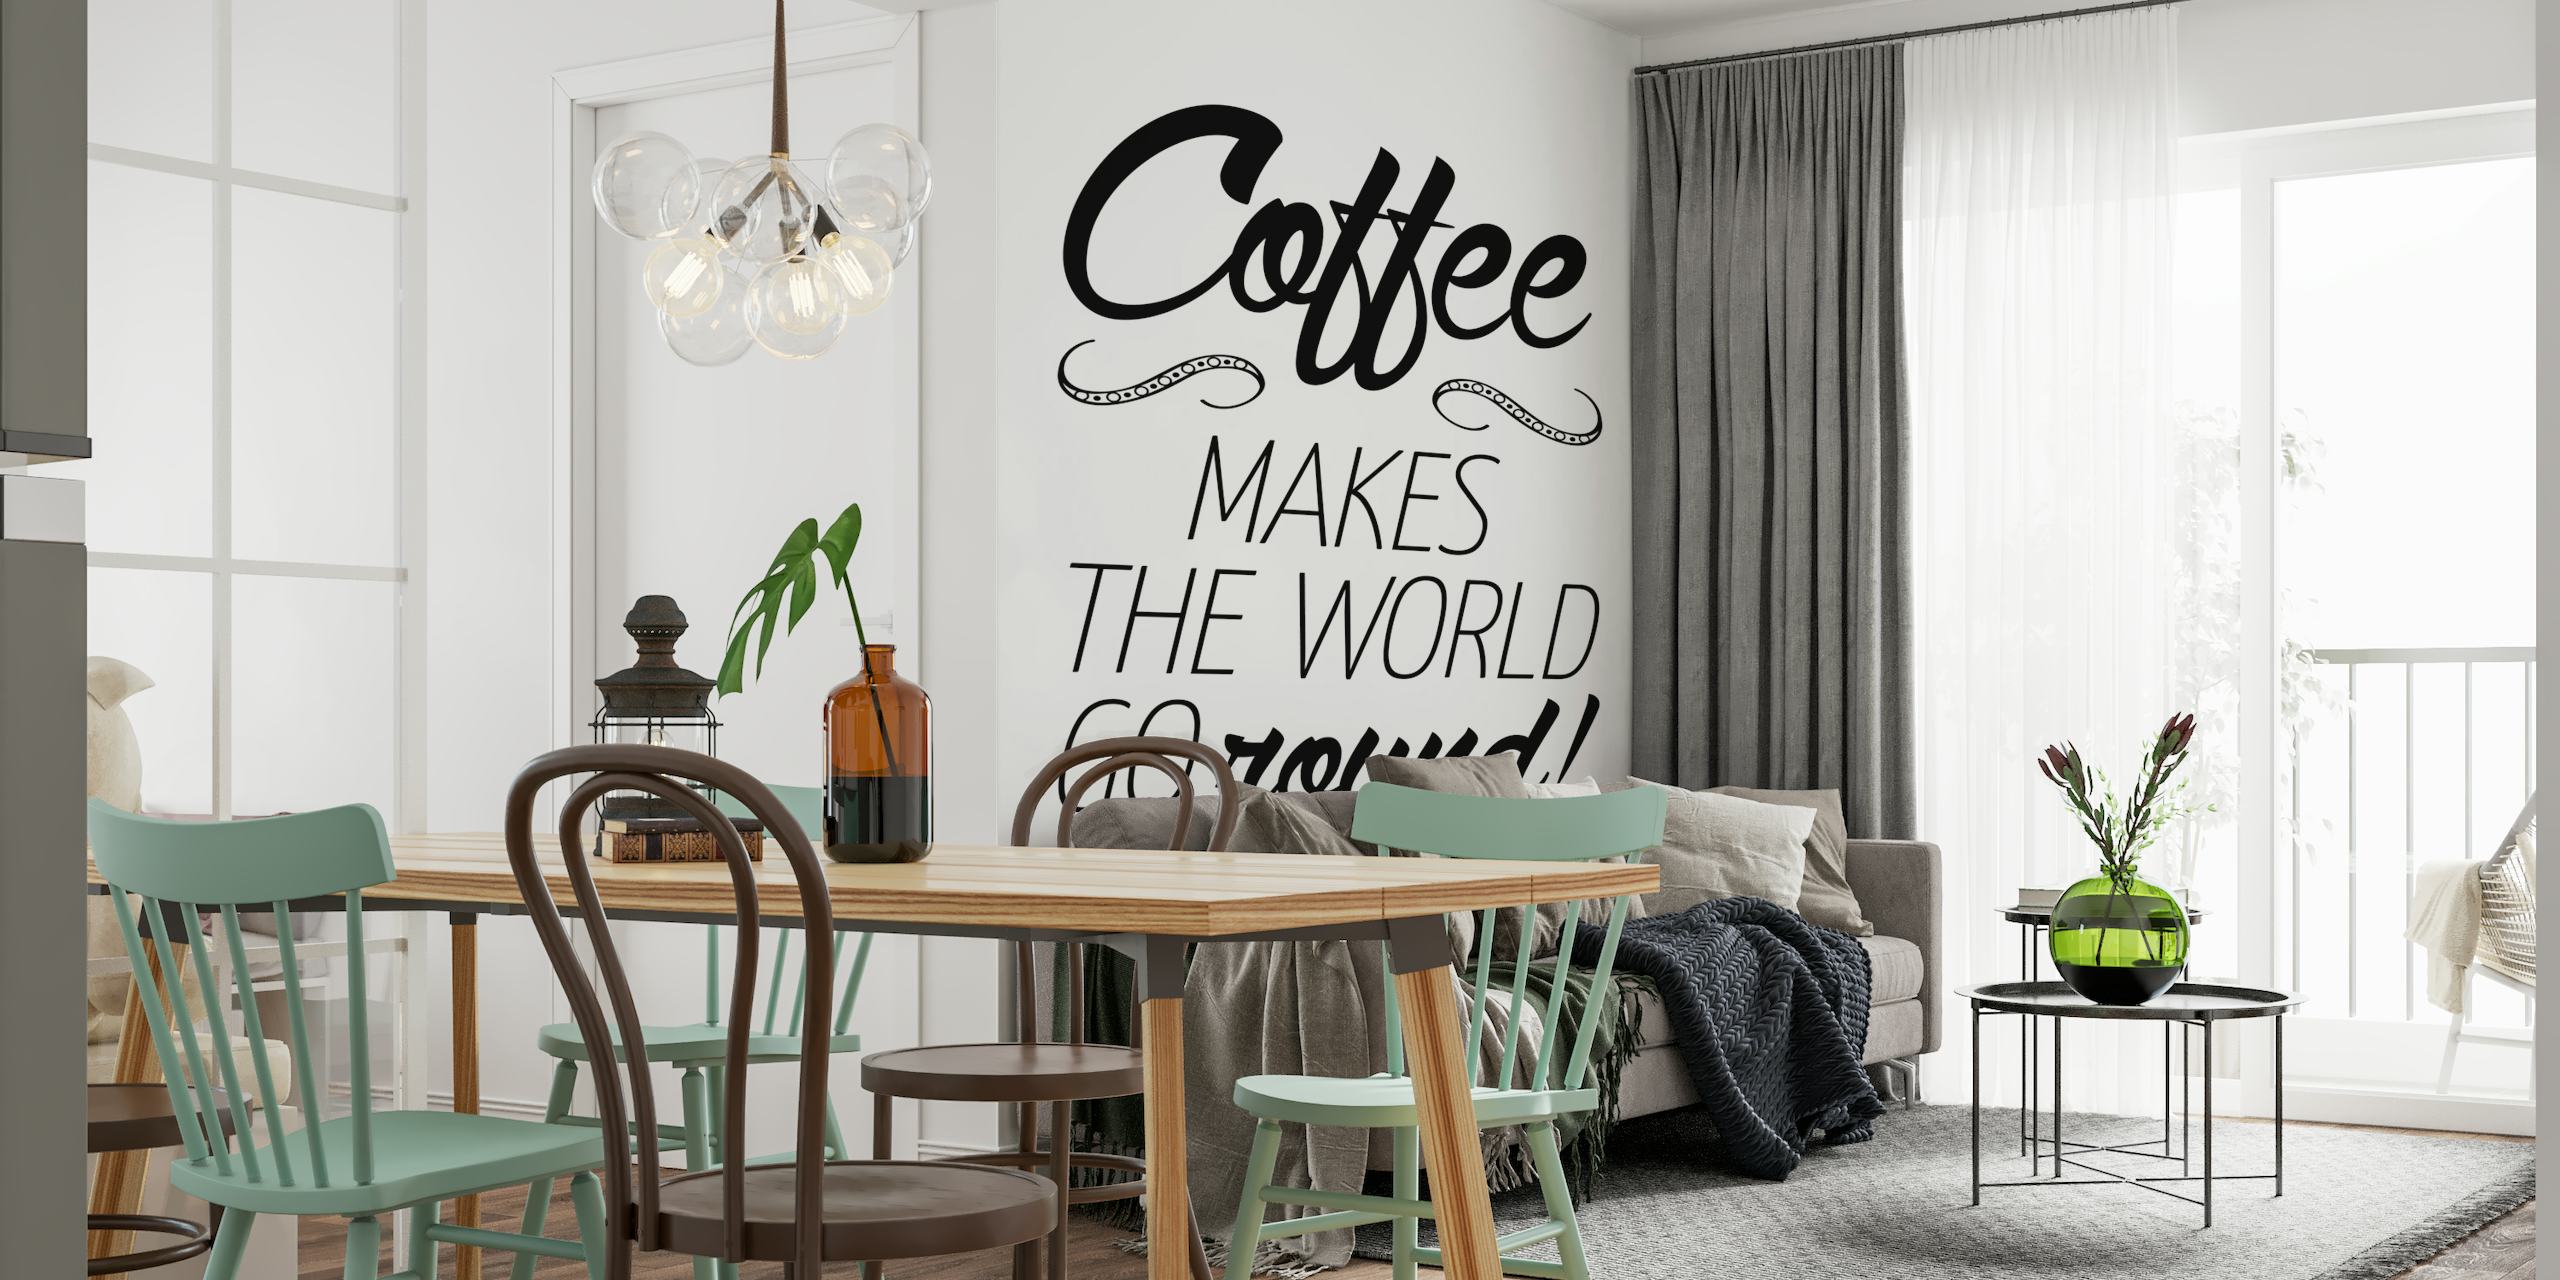 Tipografski zidni mural s natpisom "Kava pokreće svijet!" citat i mrlja od šalice kave